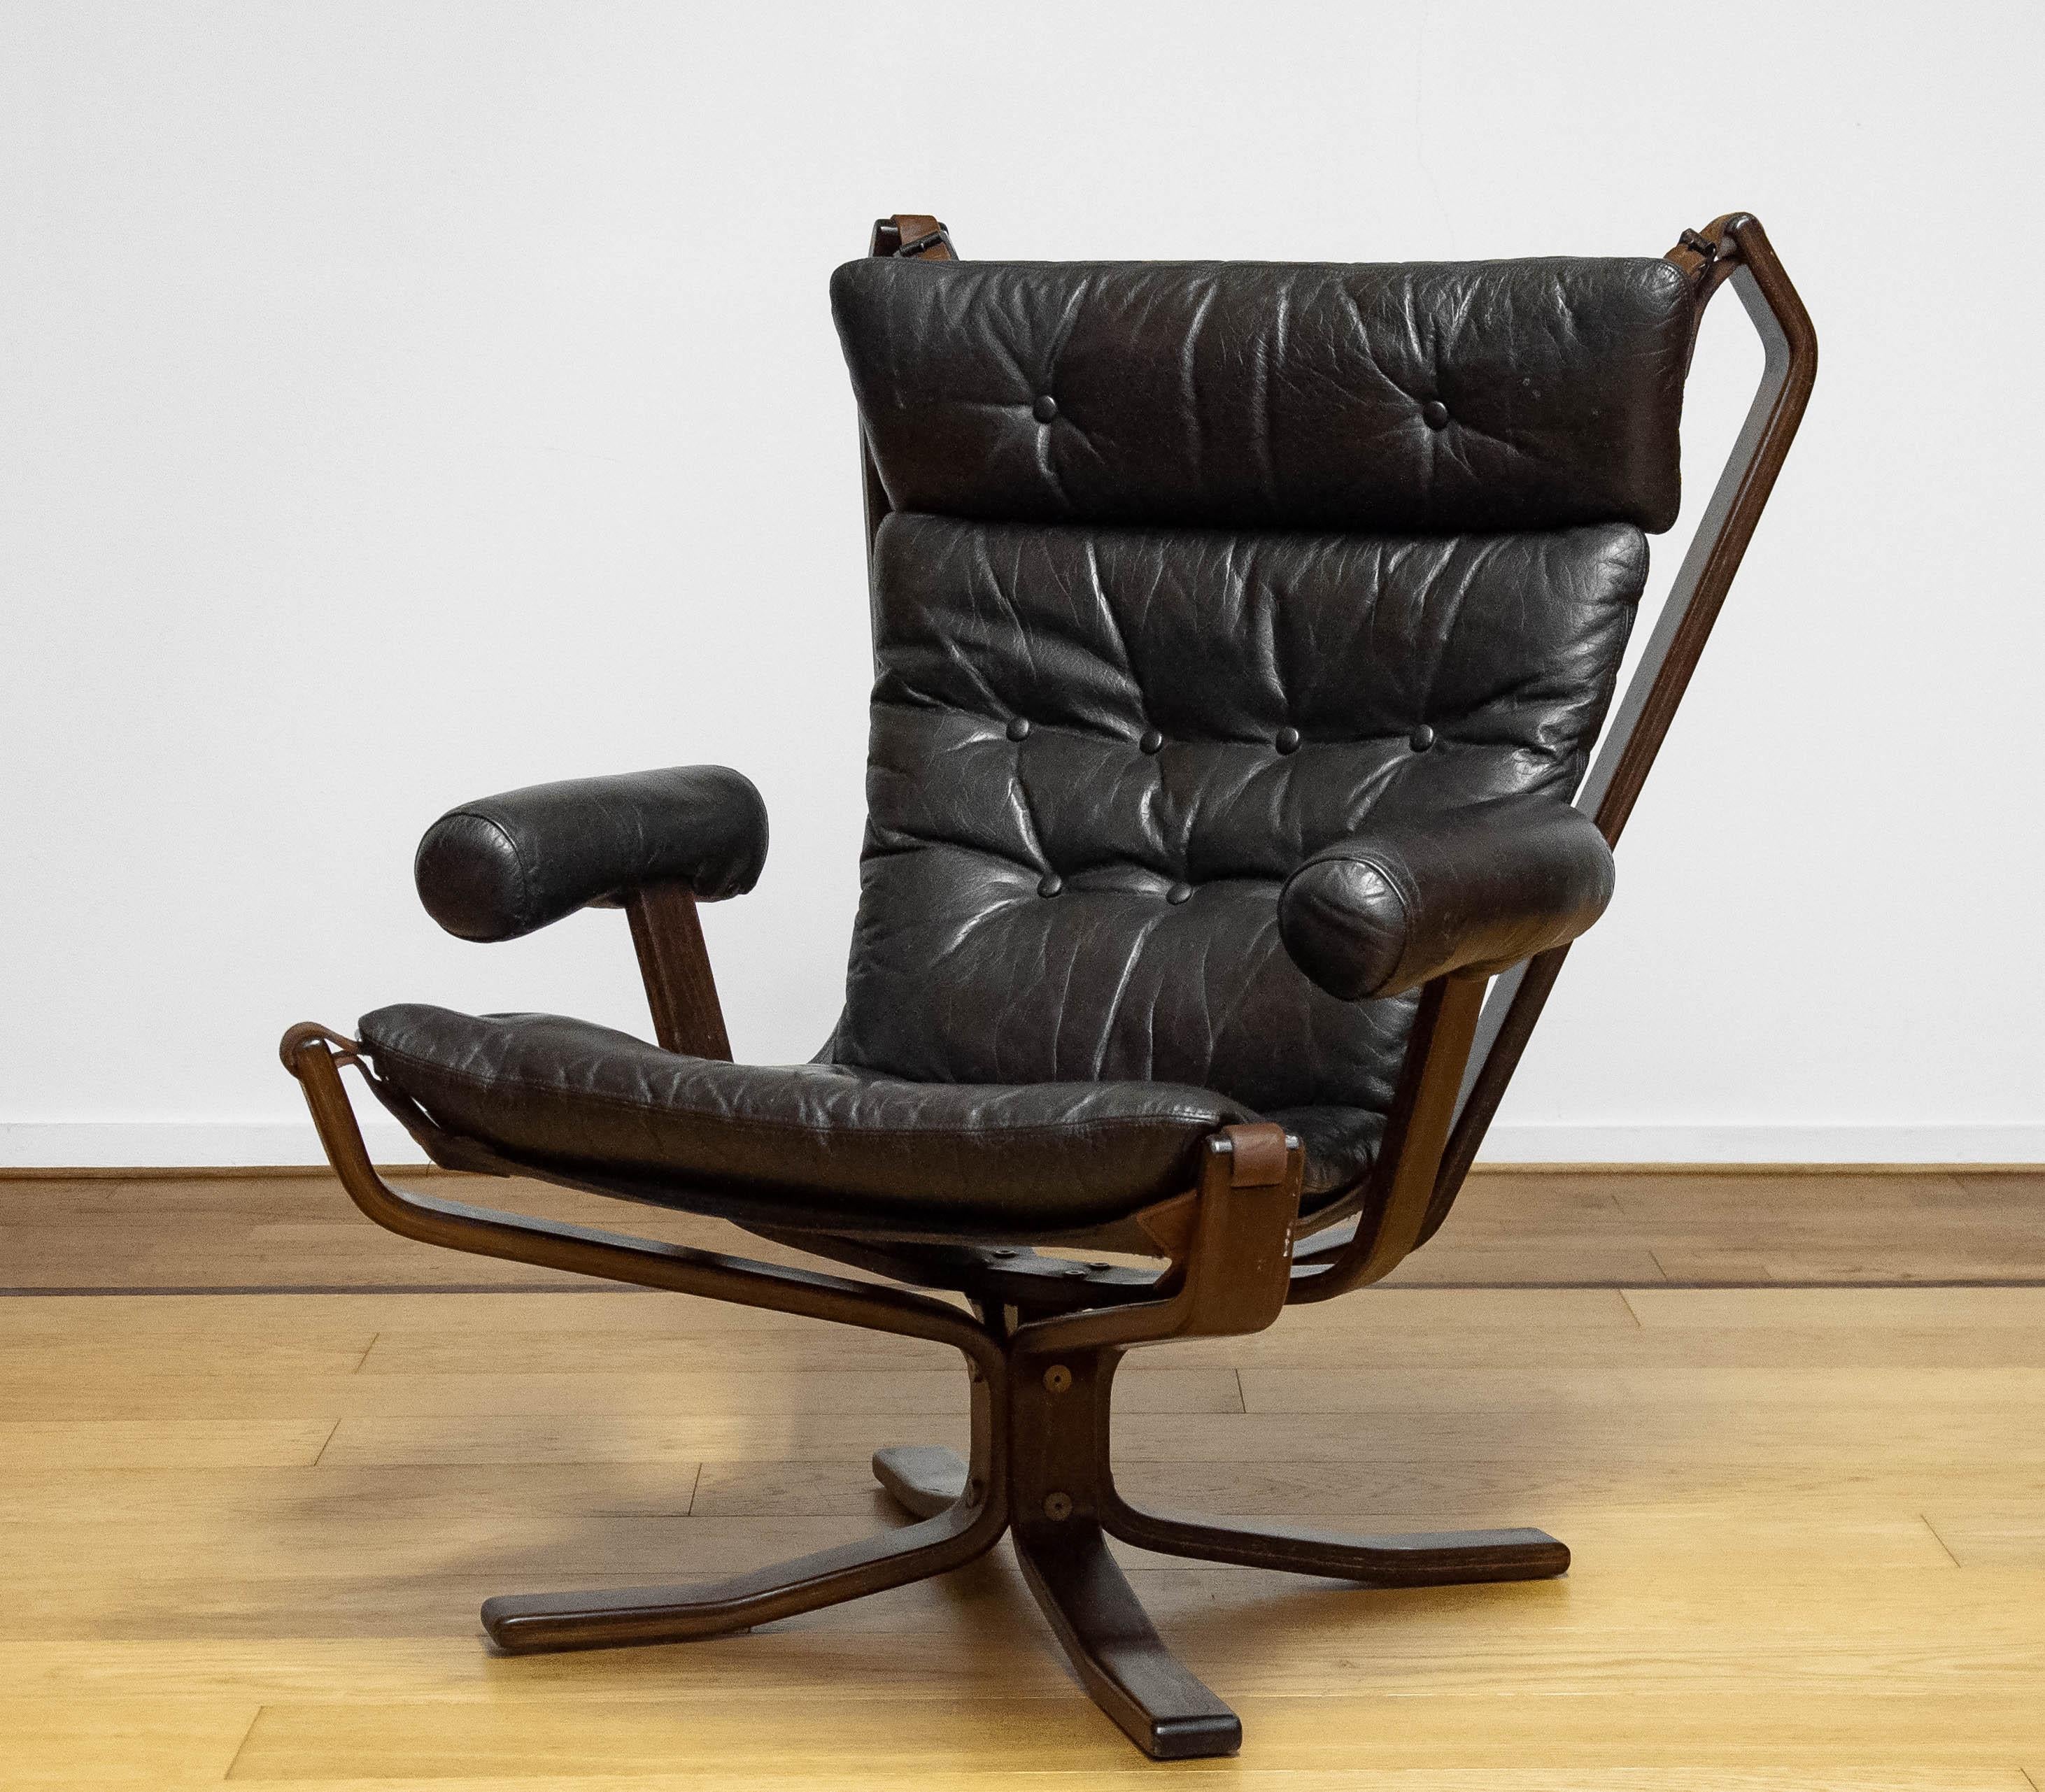 Magnifique et rare chaise de salon modèle 'Superstar' conçue par Sigurd Ressel et fabriquée par Trygg Mobler au Danemark.
Ces modèles ont été fabriqués en édition limitée.
Également célèbre sous le nom de 